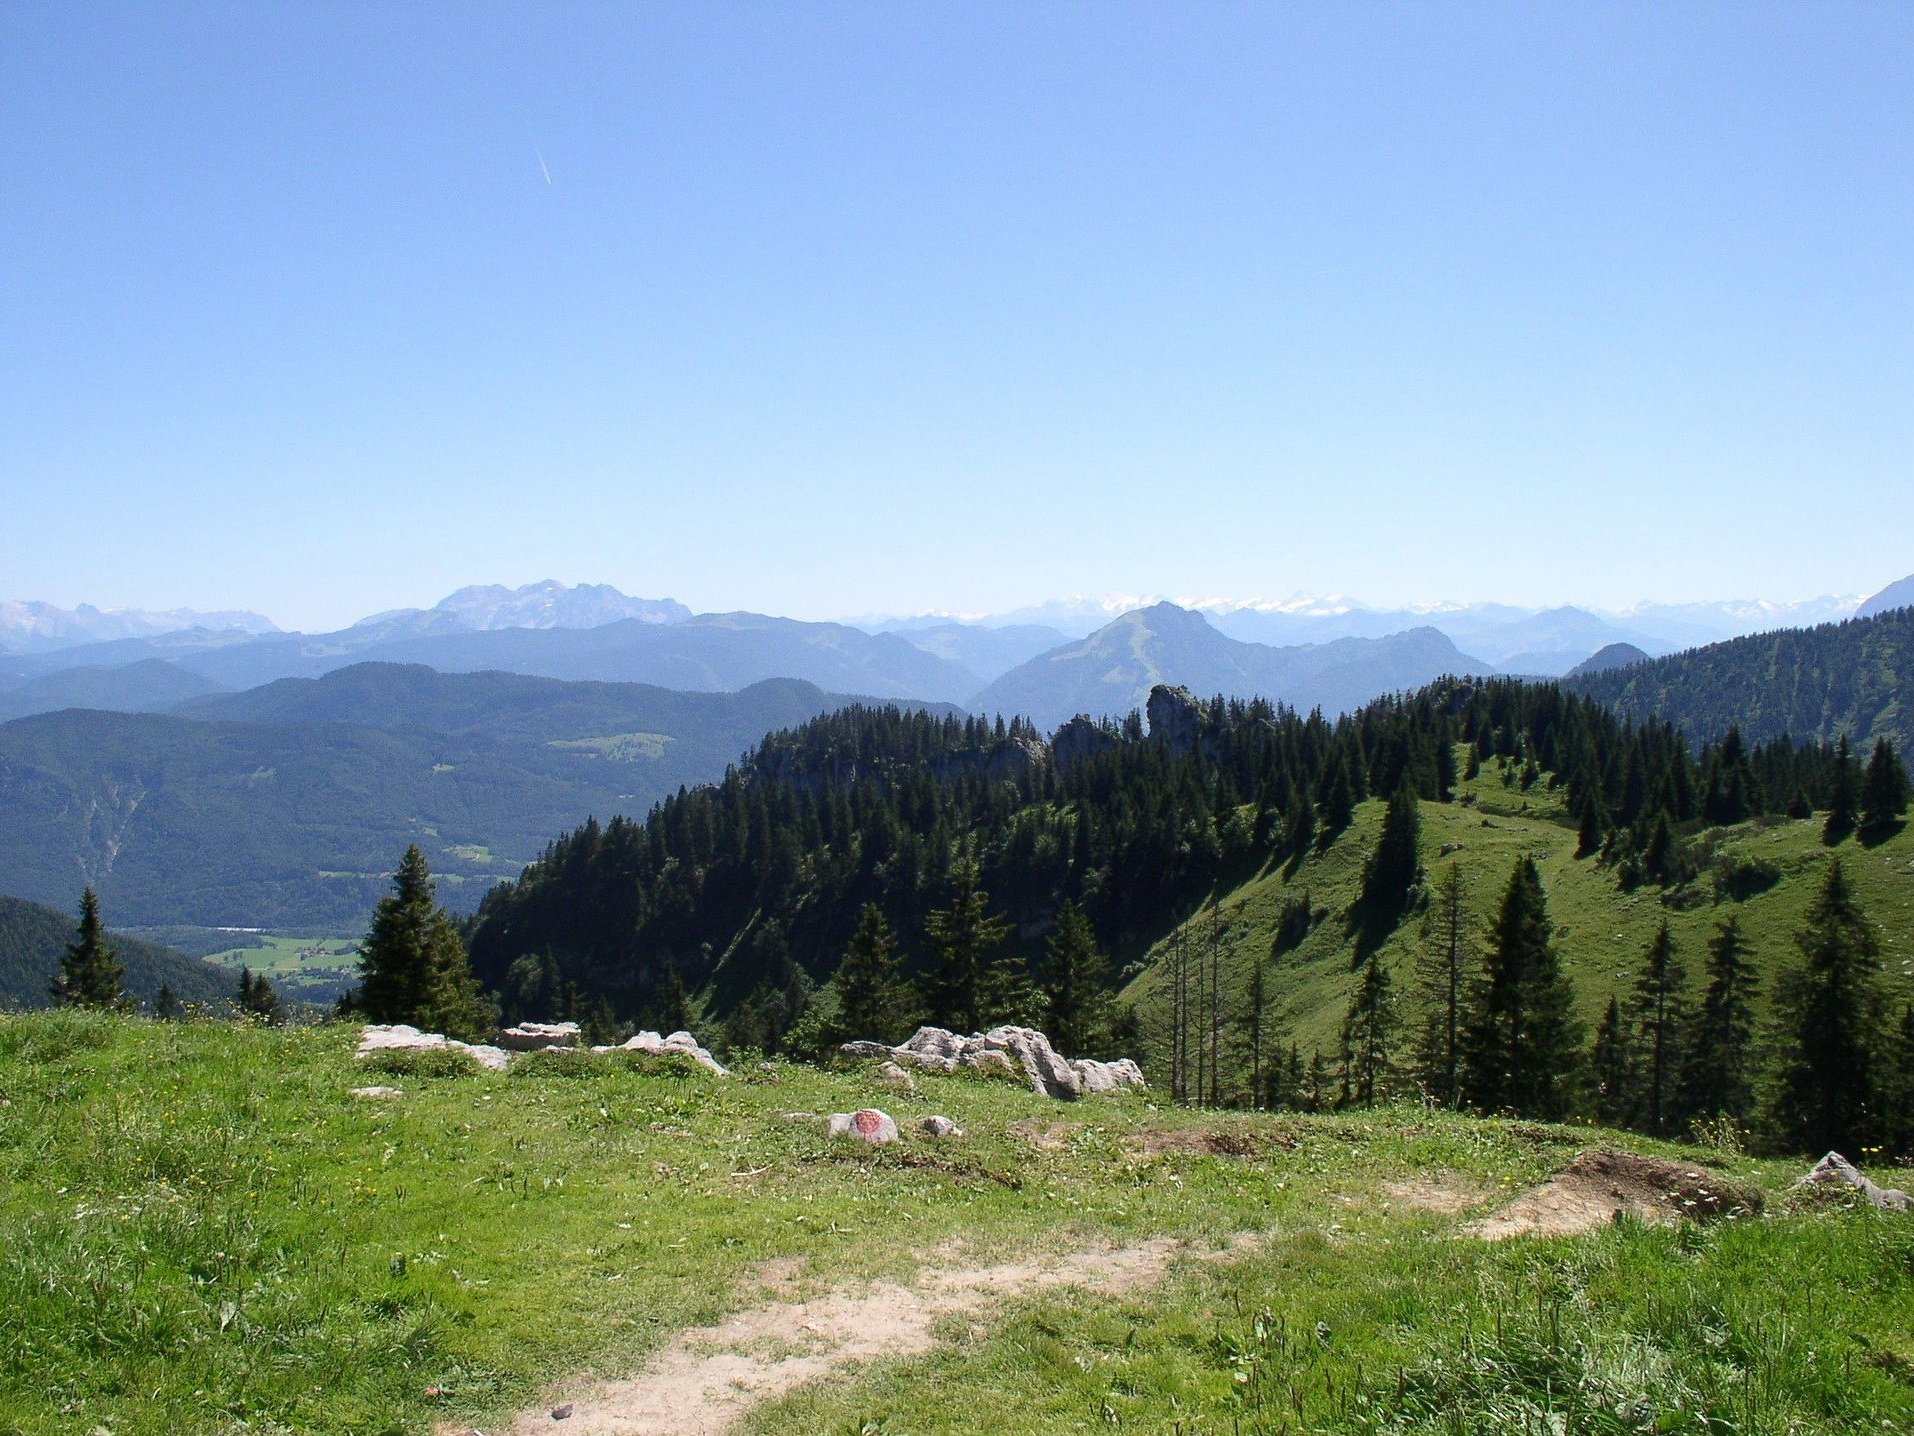 Alpenpanorama vom Berg aus gesehen